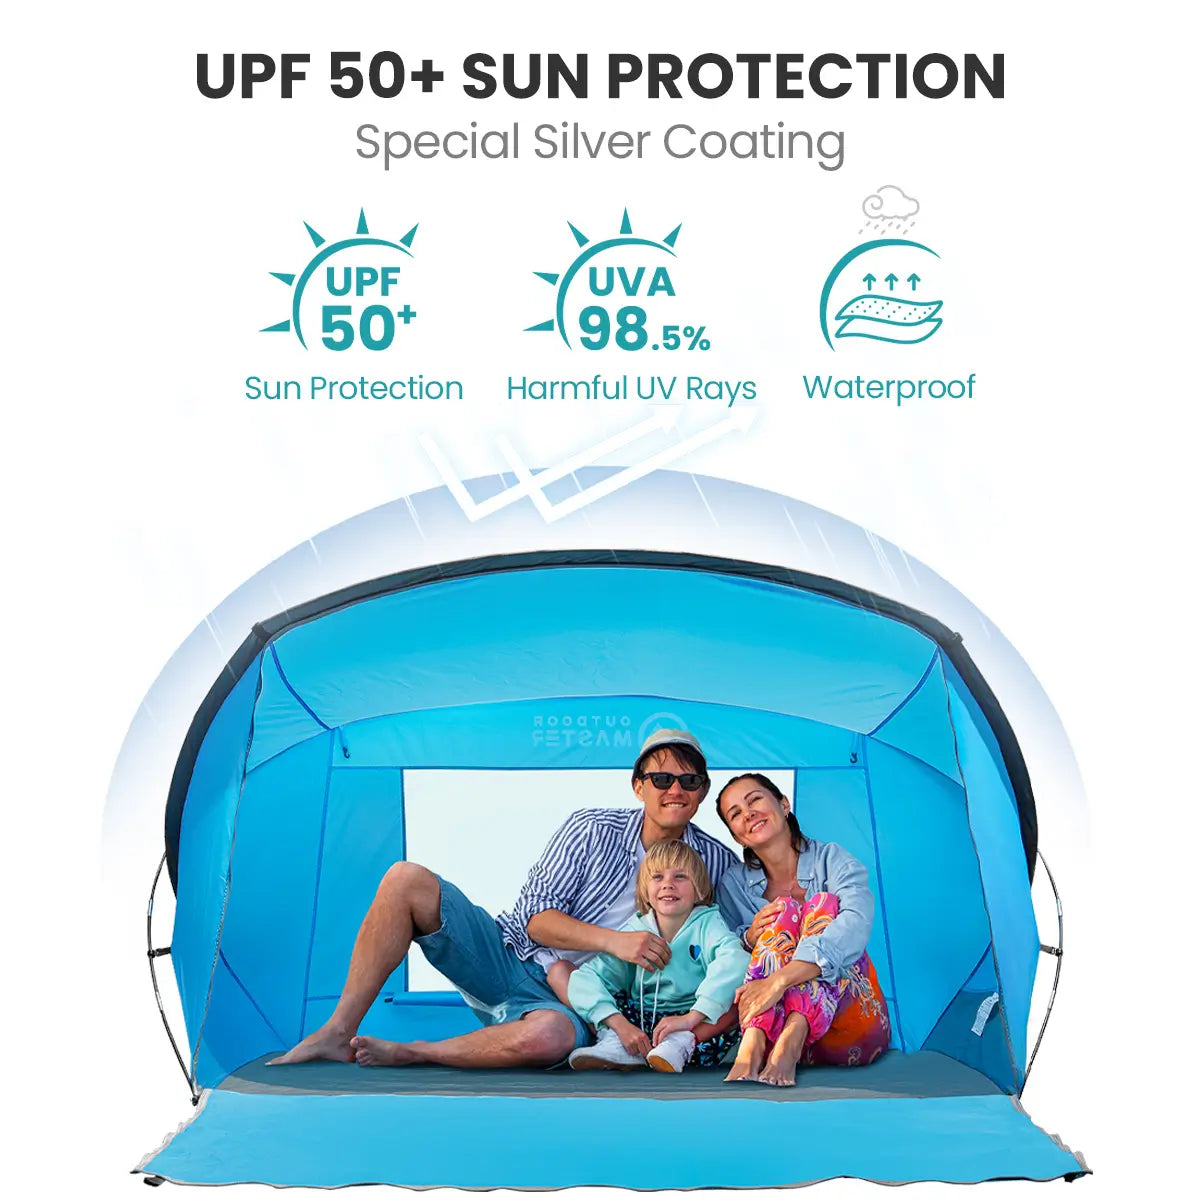 Tragbares Pop-up-Zelt von OutdoorMaster 